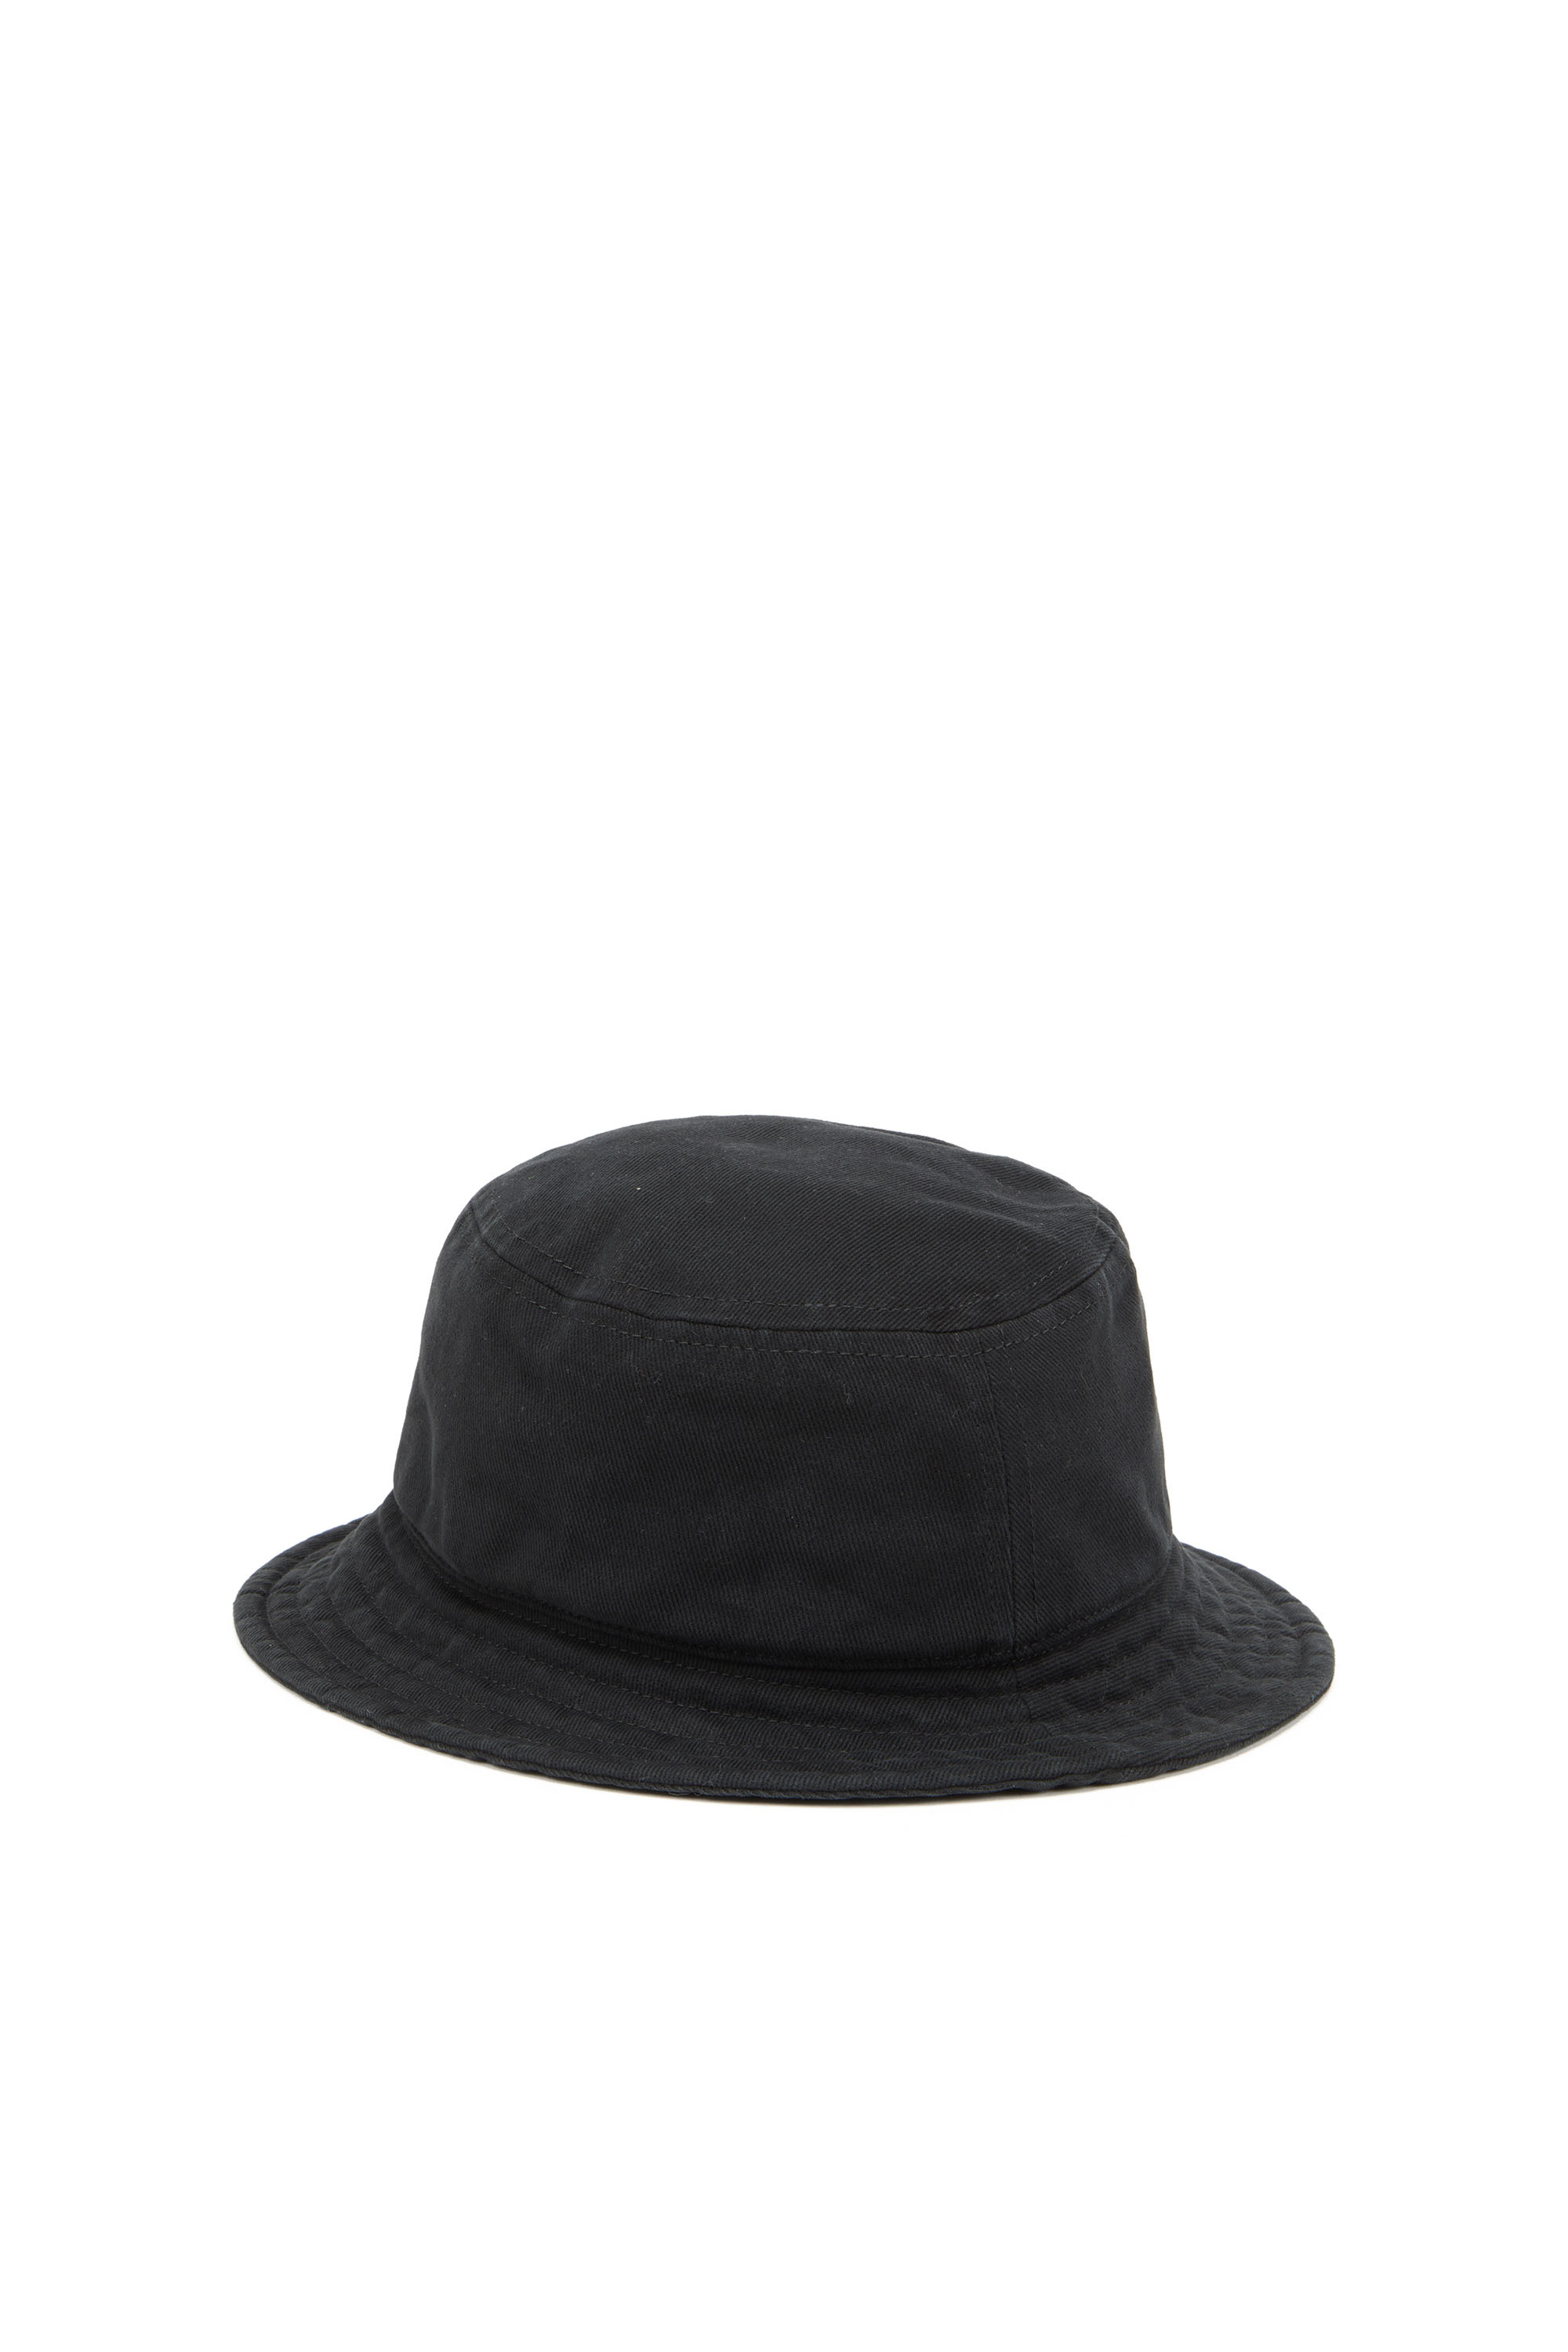 Diesel - Sombrero de pescador con bordado del logotipo a tono - Gorras - Hombre - Negro